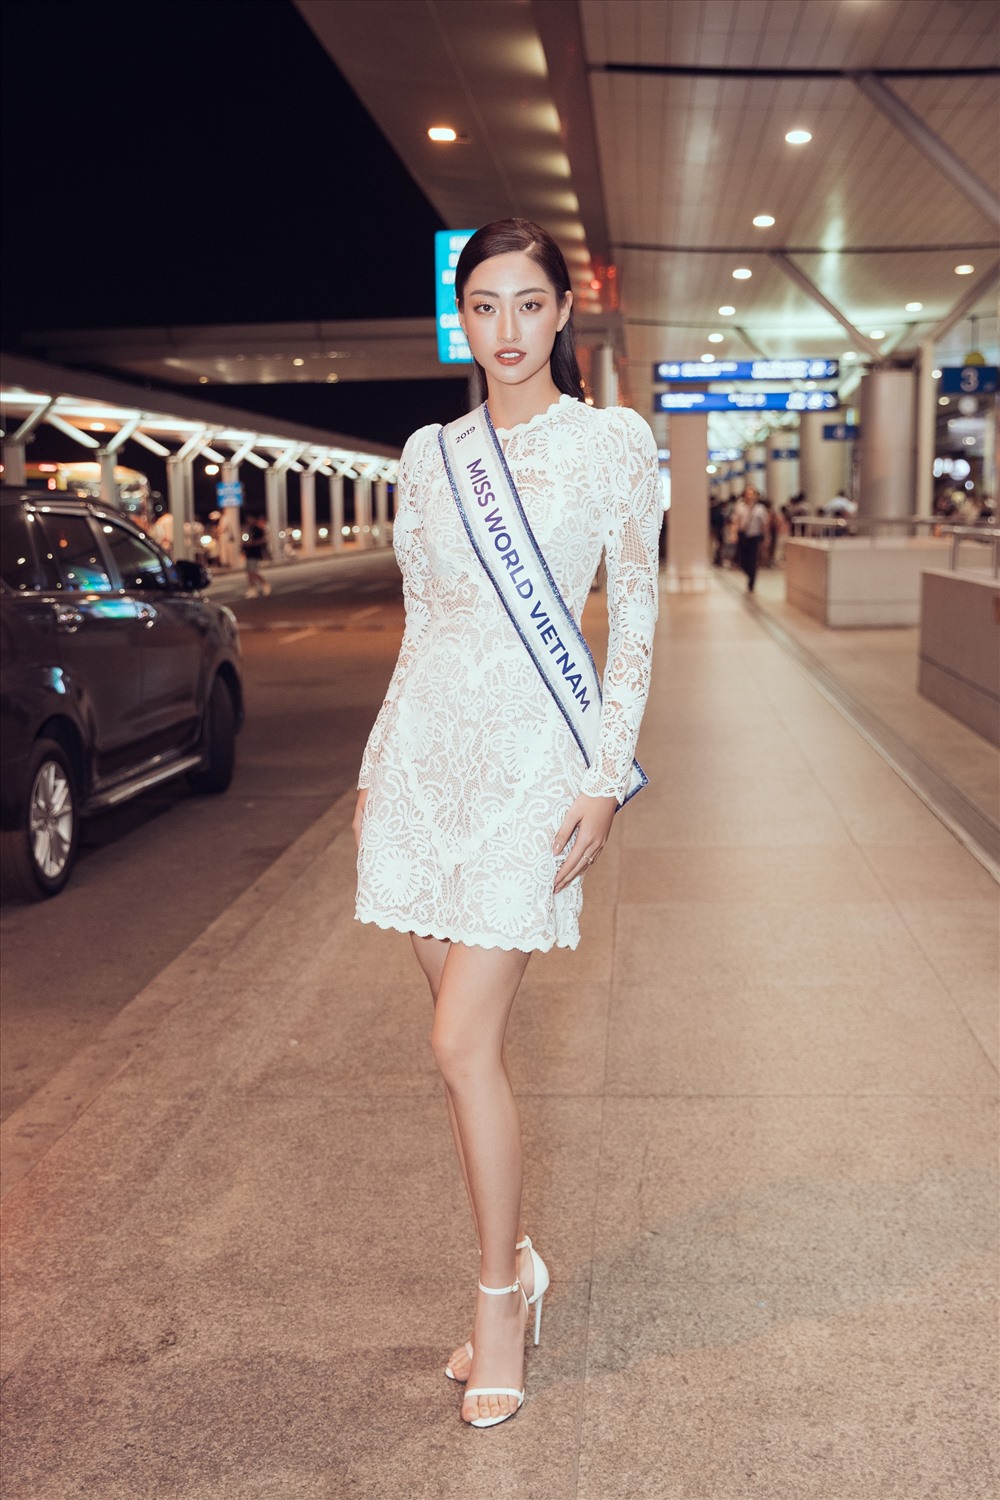 Sau khoảng thời gian chuẩn bị chỉn chu và kĩ lưỡng, Hoa hậu Lương Thùy Linh đã chính thức lên đường sang Anh để tới với Miss World 2019. Ảnh: Sen Vàng.